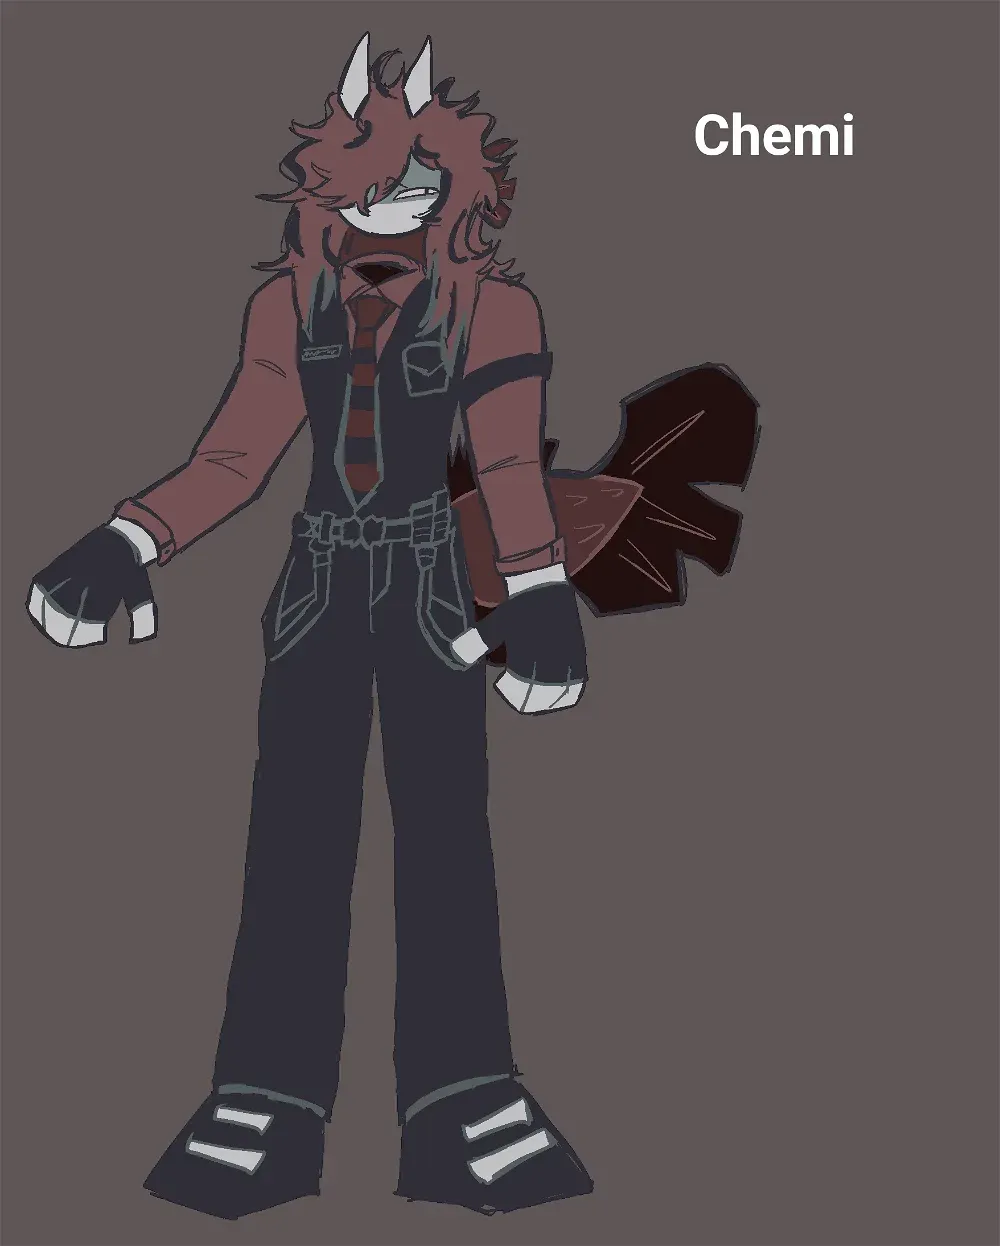 Avatar of Mister Chemical